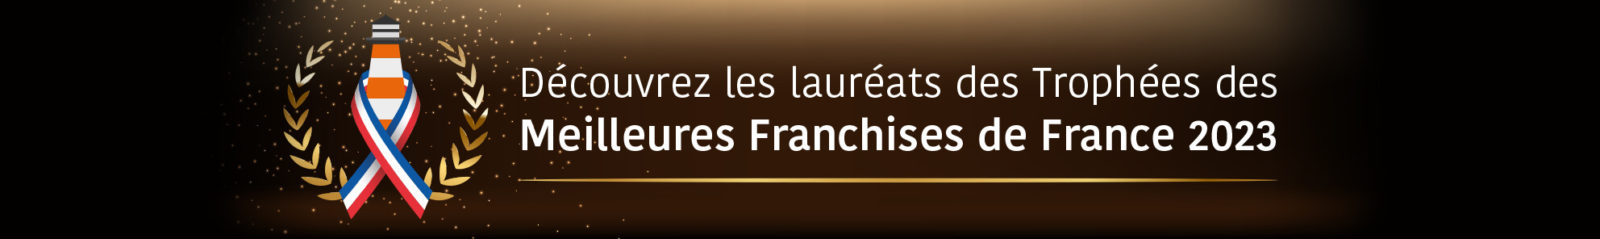 Bandeau lauréats des Trophées des Meilleures Franchises de France 2023